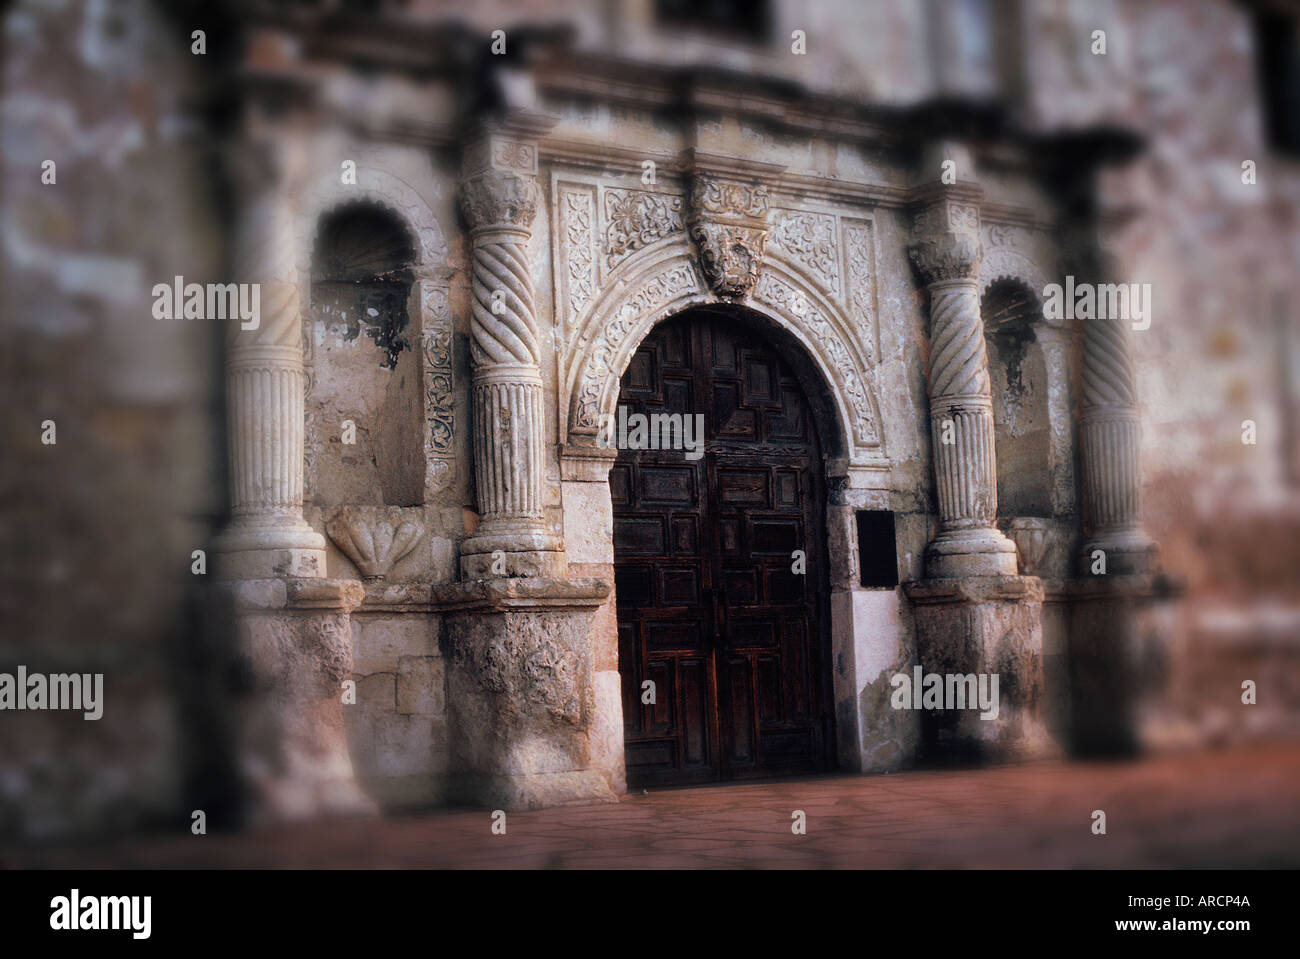 Front entrance to The Alamo, San Antonio, Texas, USA. Stock Photo